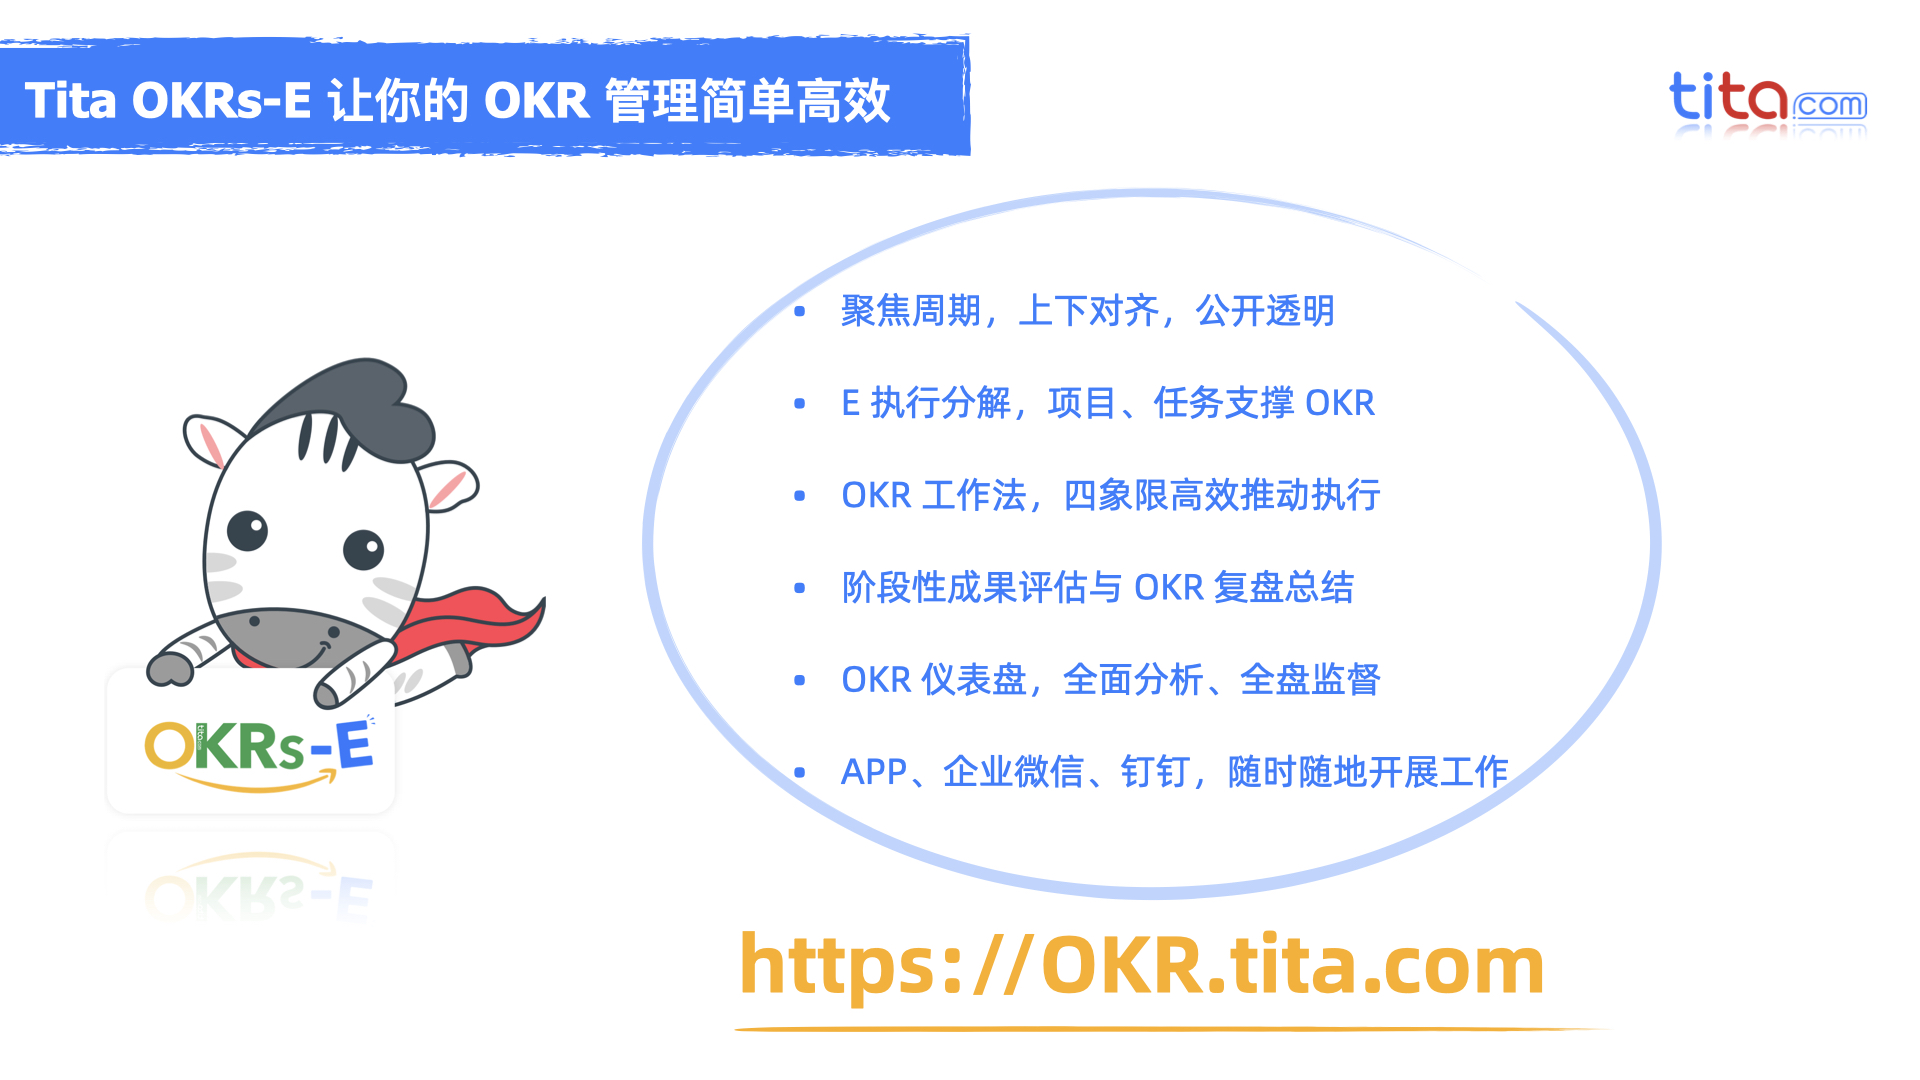 《OKR目标管理平台》产品介绍 @2021